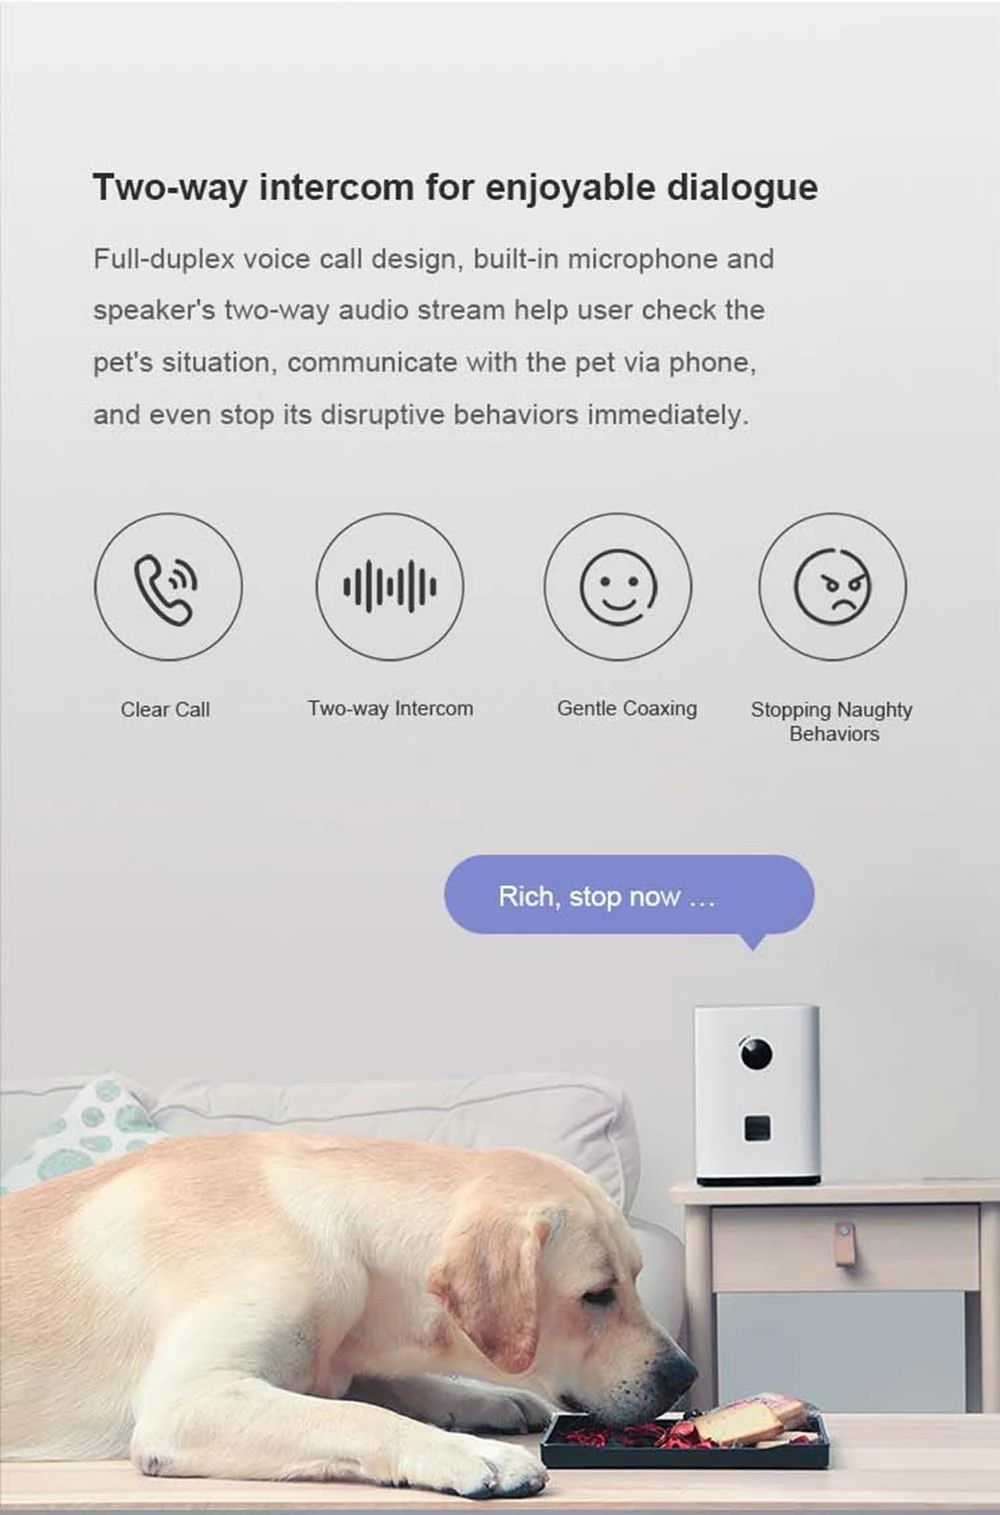 Pawbby intelligente huisdier camera traktatie dispenser, HD WiFi-camera met nachtzicht, 2-Way Audio Feeder voor hond kat Puppy